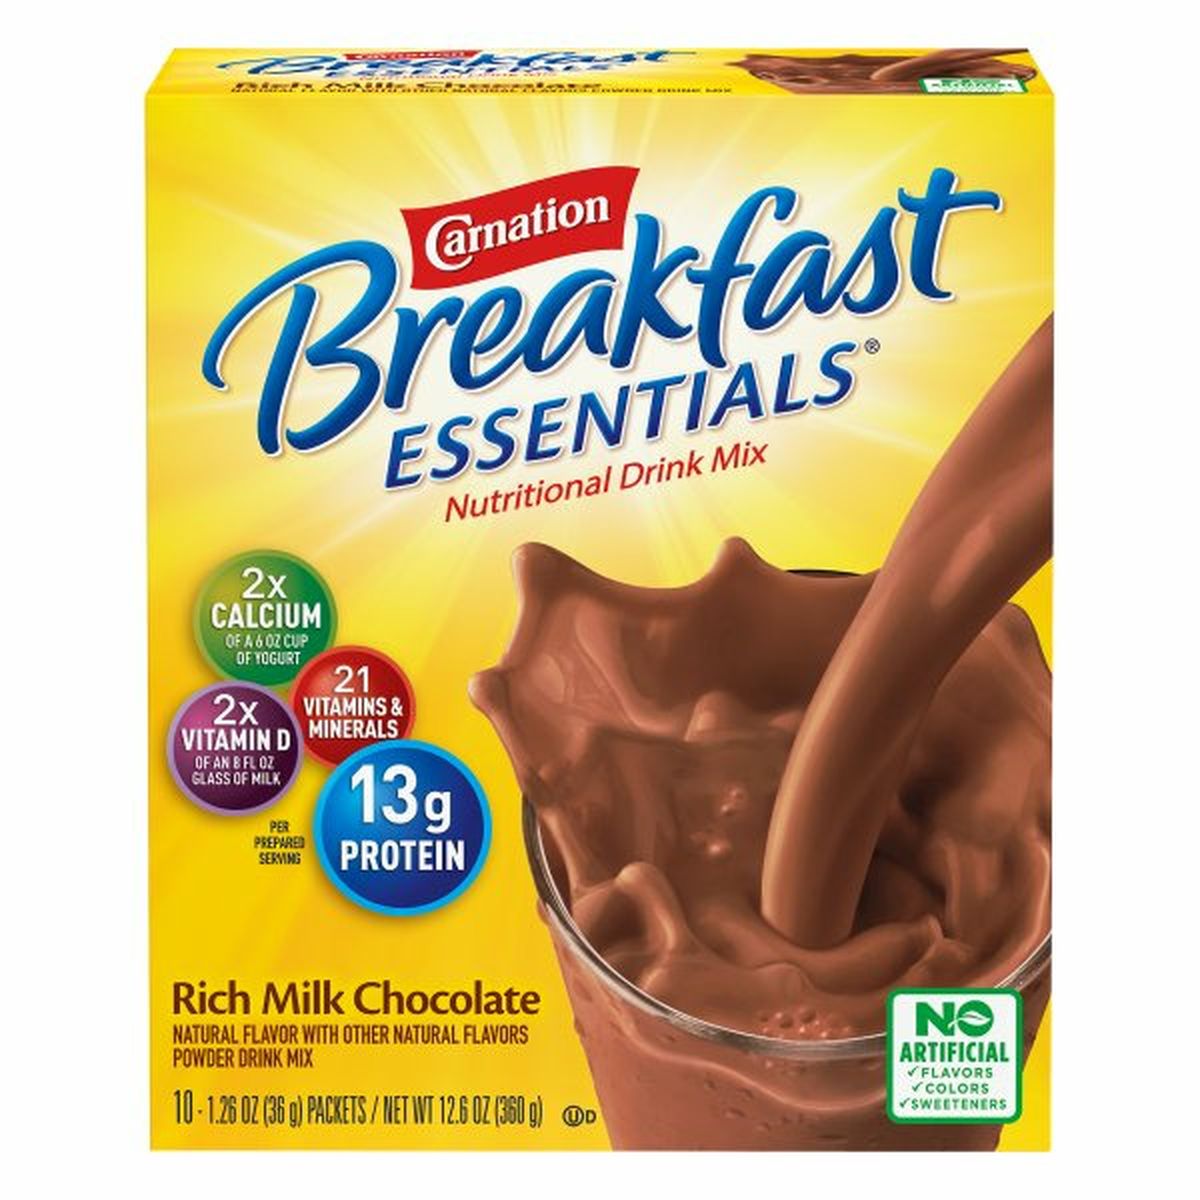 Calories in Carnation Breakfast Essentials Breakfast Essentials Nutritional Drink Mix, Rich Milk Chocolate